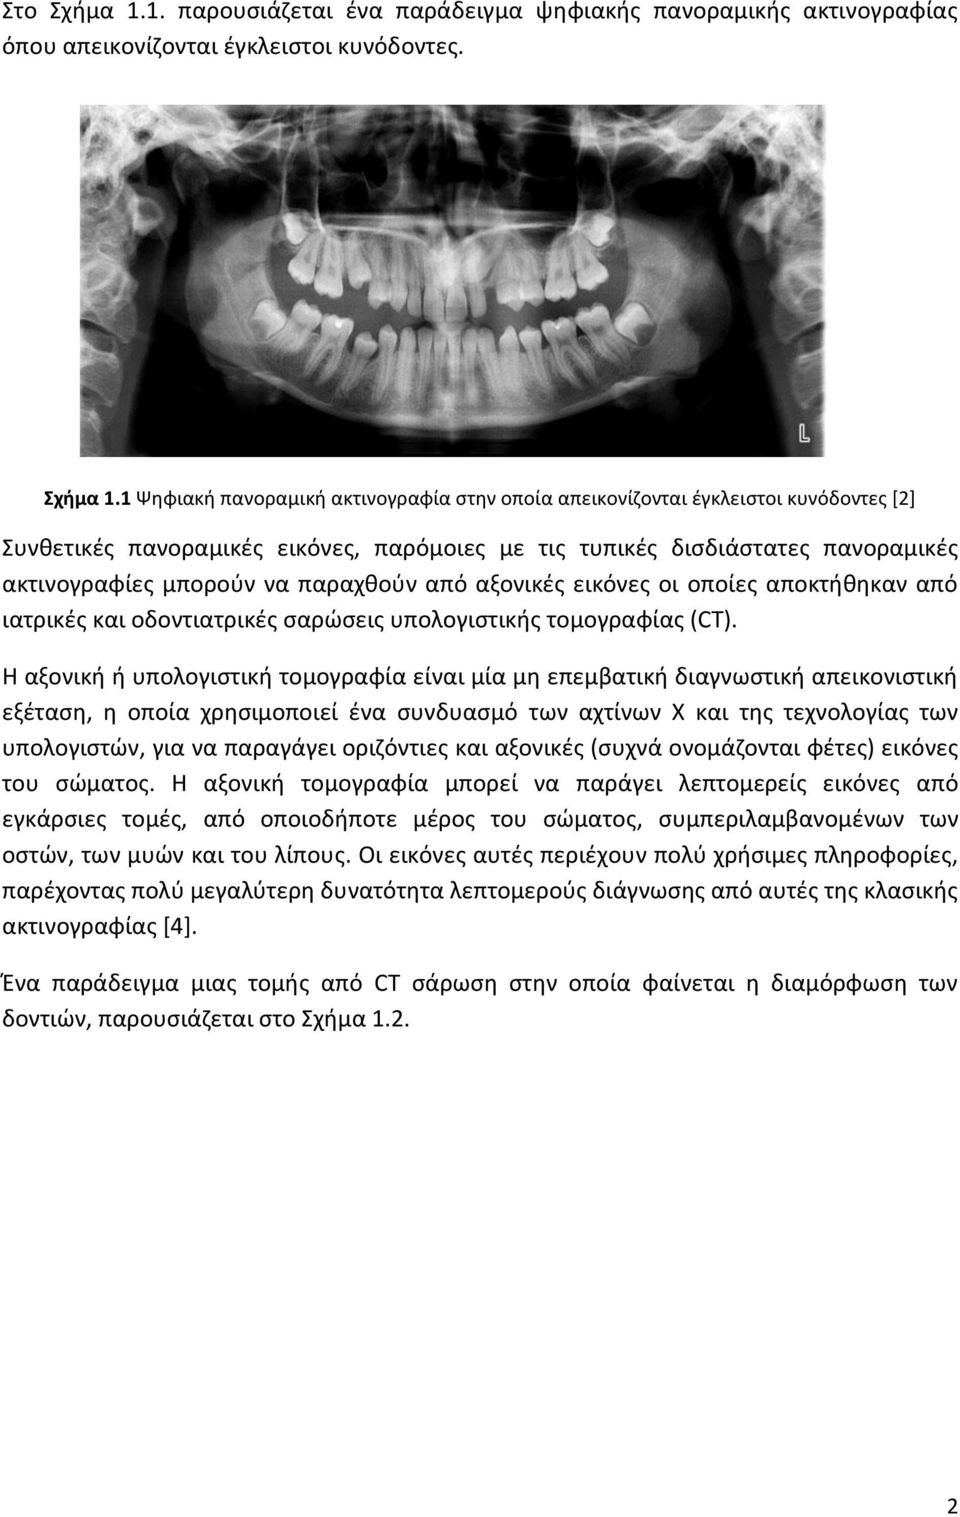 Ανακατασκευή Πανοραμικής Ακτινογραφίας Δοντιών από Αξονικές Τομογραφίες  ΔΙΠΛΩΜΑΤΙΚΗ ΕΡΓΑΣΙΑ - PDF Free Download